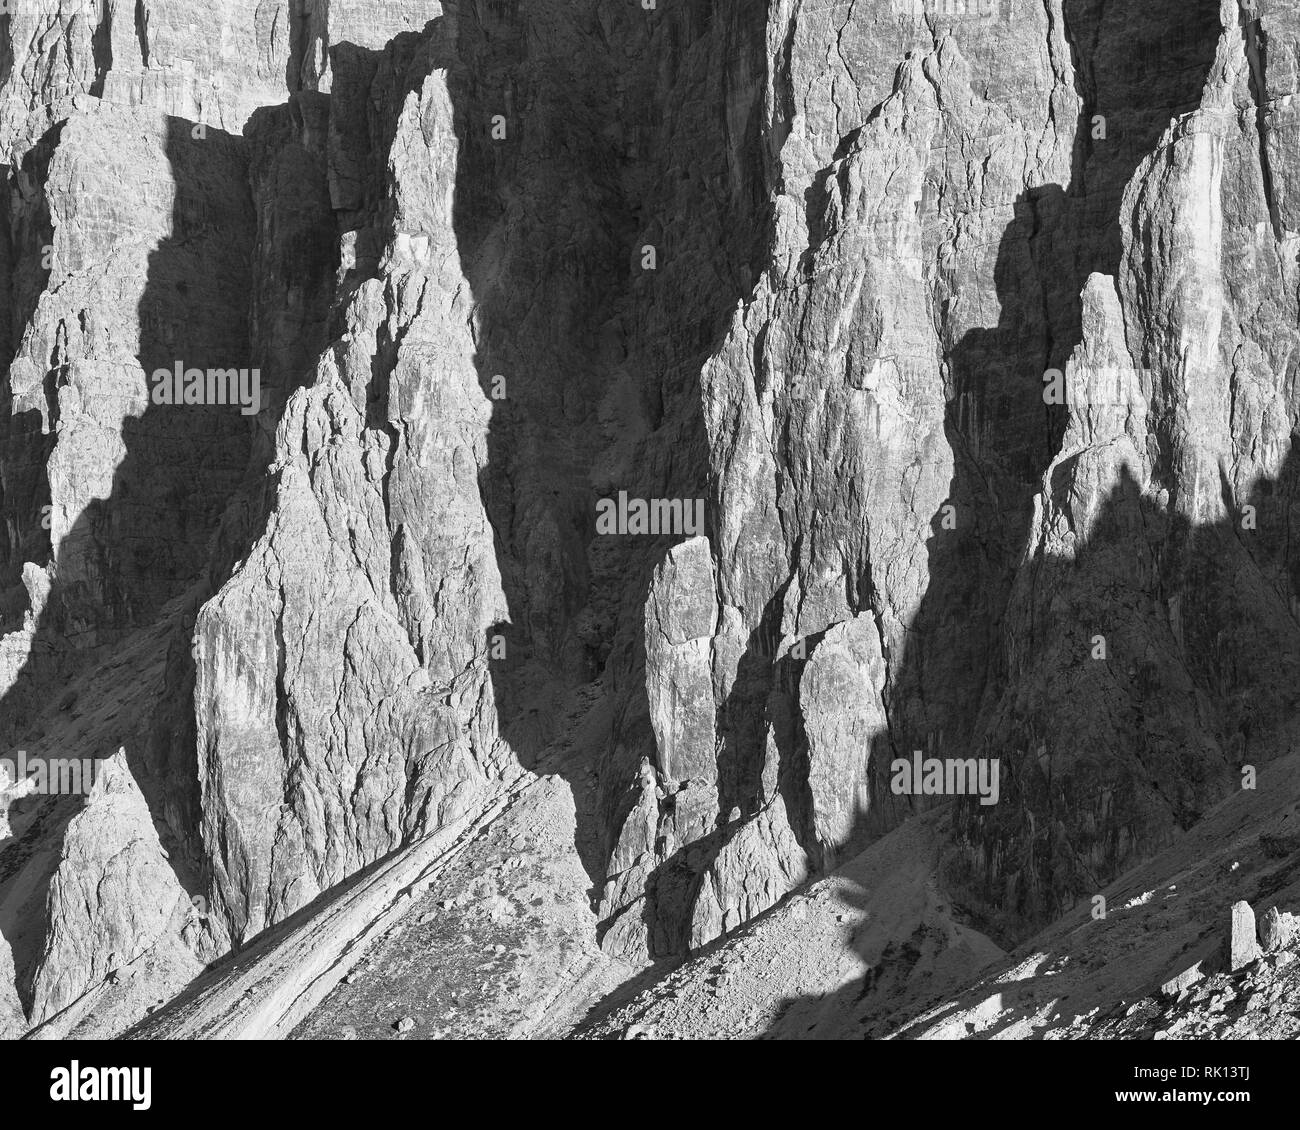 Falaises dolomitiques en noir et blanc, de Passo Giau, Veneto, Italie Banque D'Images